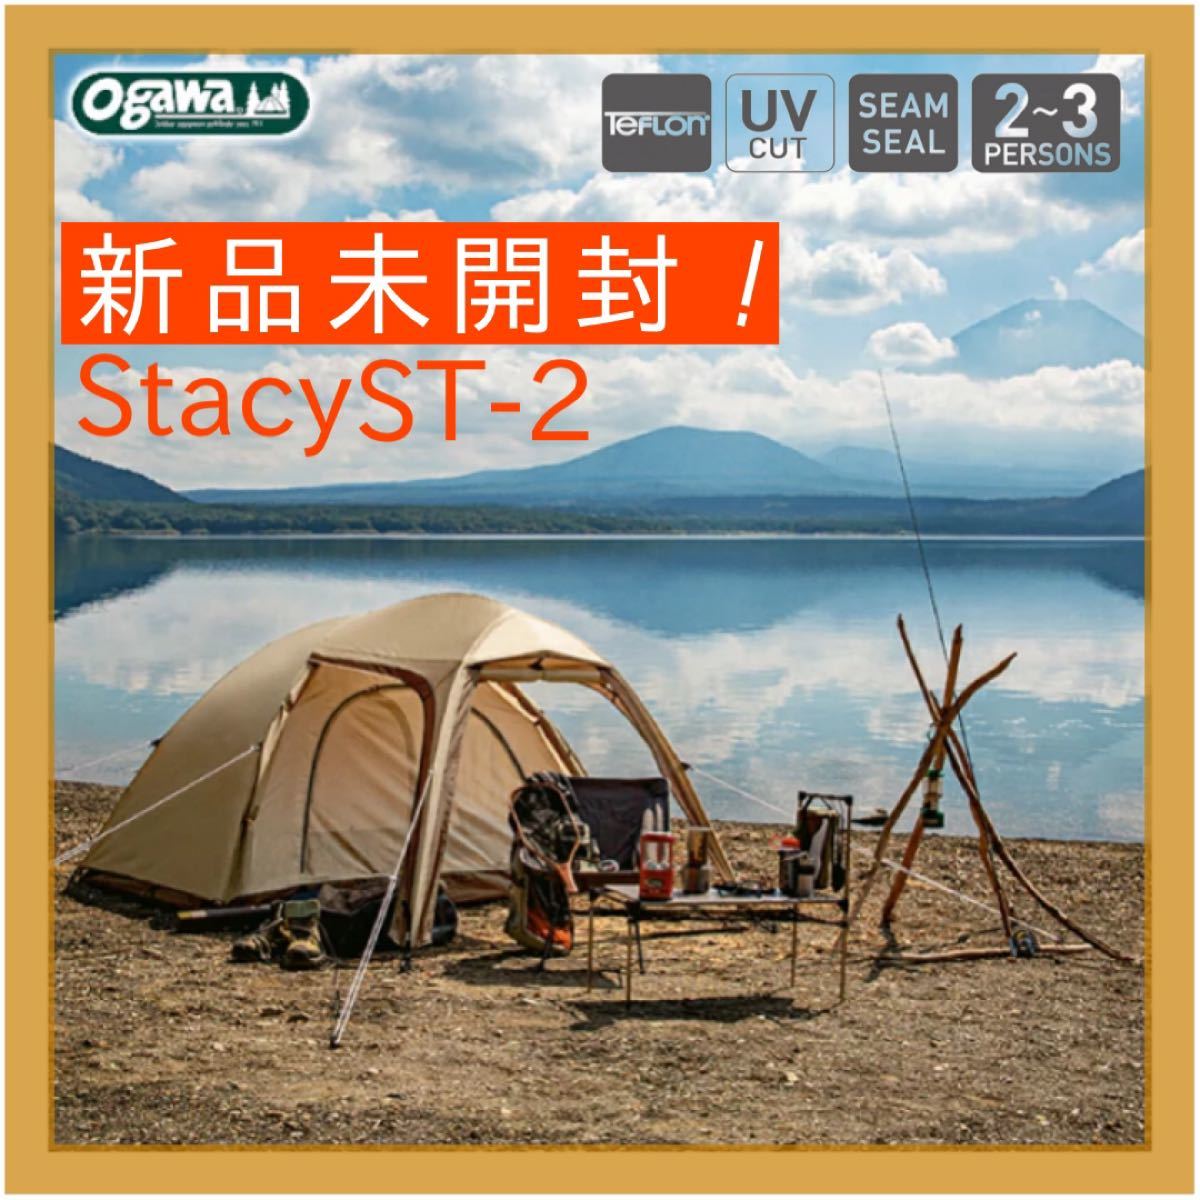 【新品未開封】小川キャンパル テント Stacy ST-2 サンドベージュ オガワ